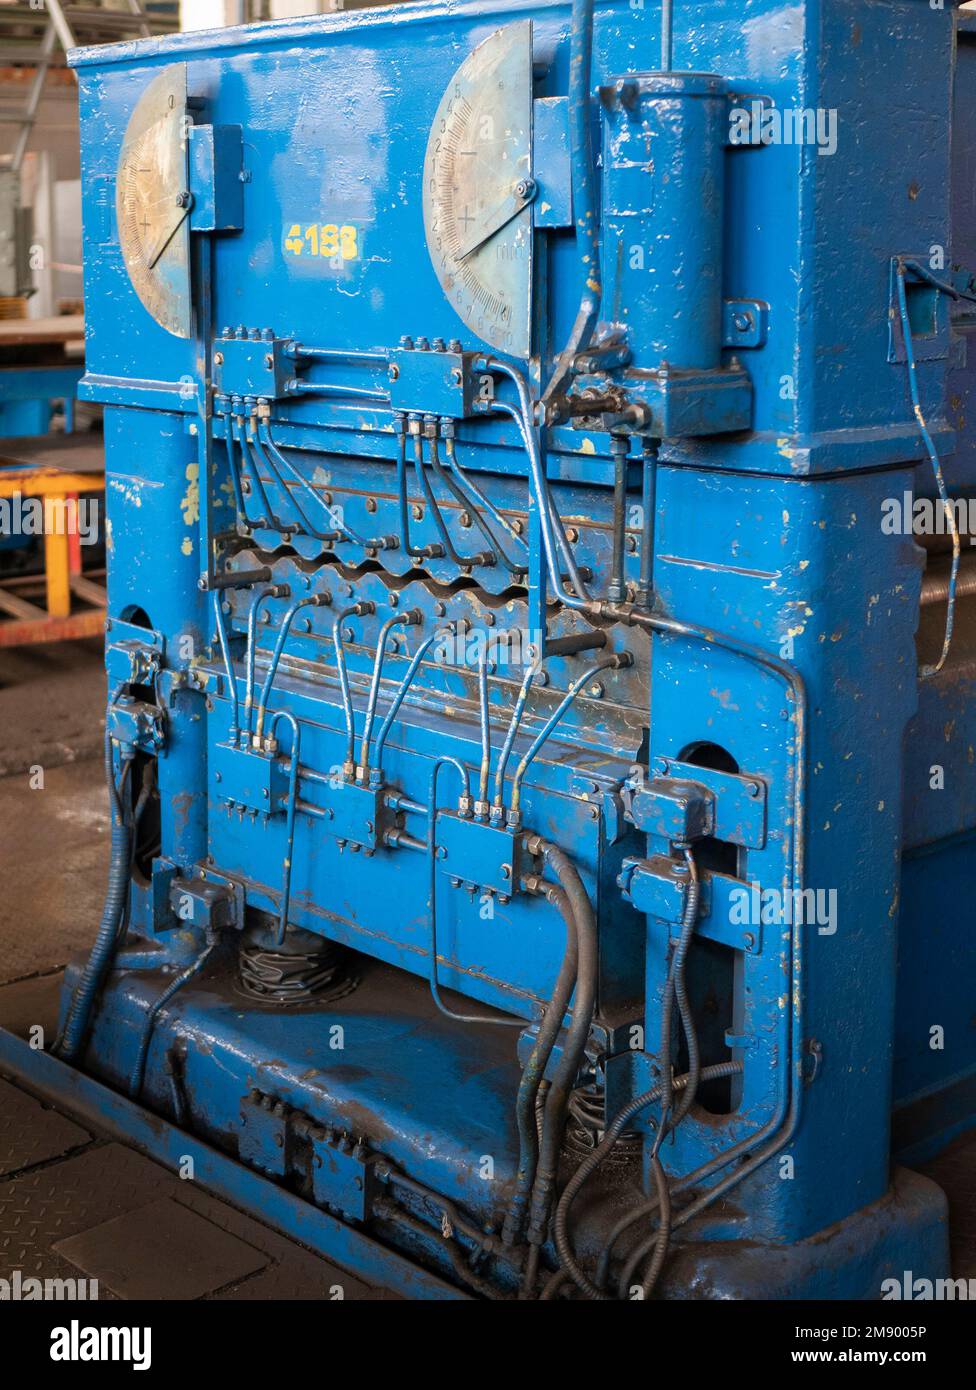 Pressmaschine in der Fabrikwerkstatt, vertikales Format. Metallbearbeitungsgeräte. Konzept der Metallbearbeitungstechnik Stockfoto